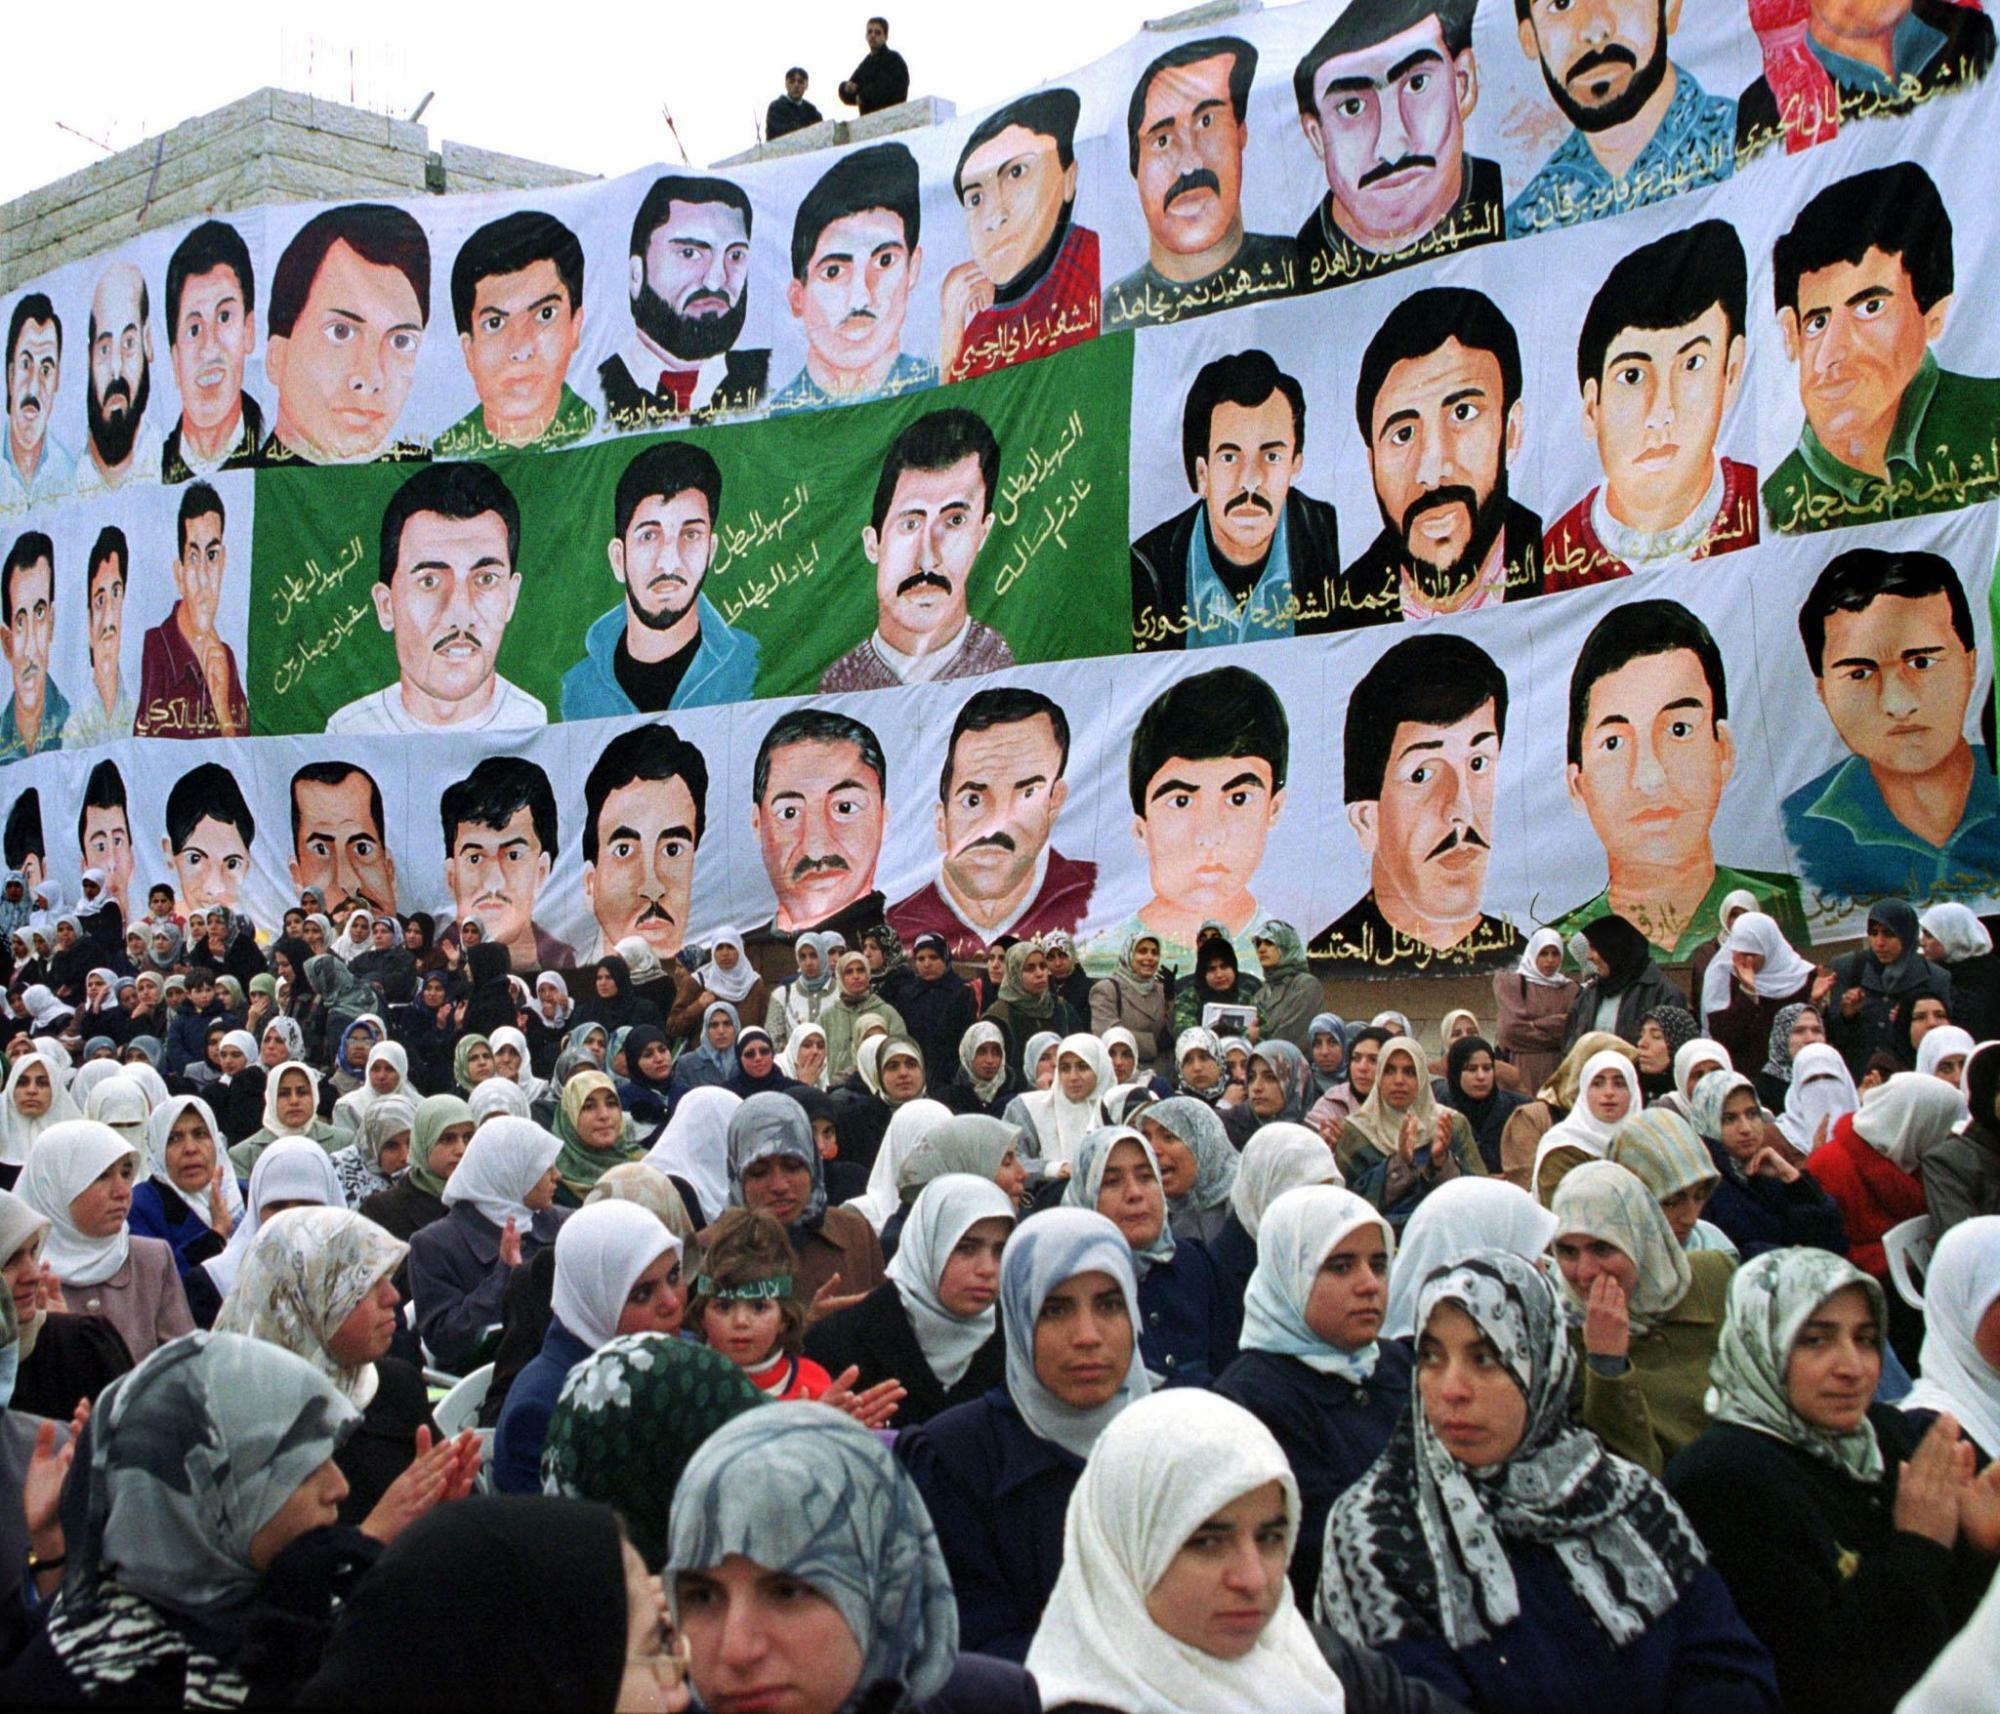 イスラエルへの抵抗運動「インティファーダ」で殺害された夫や父親の肖像画を掲げるパレスチナ人女性（2000.12.11）。自然発生的だったインティファーダを統率して台頭したのがハマスである。